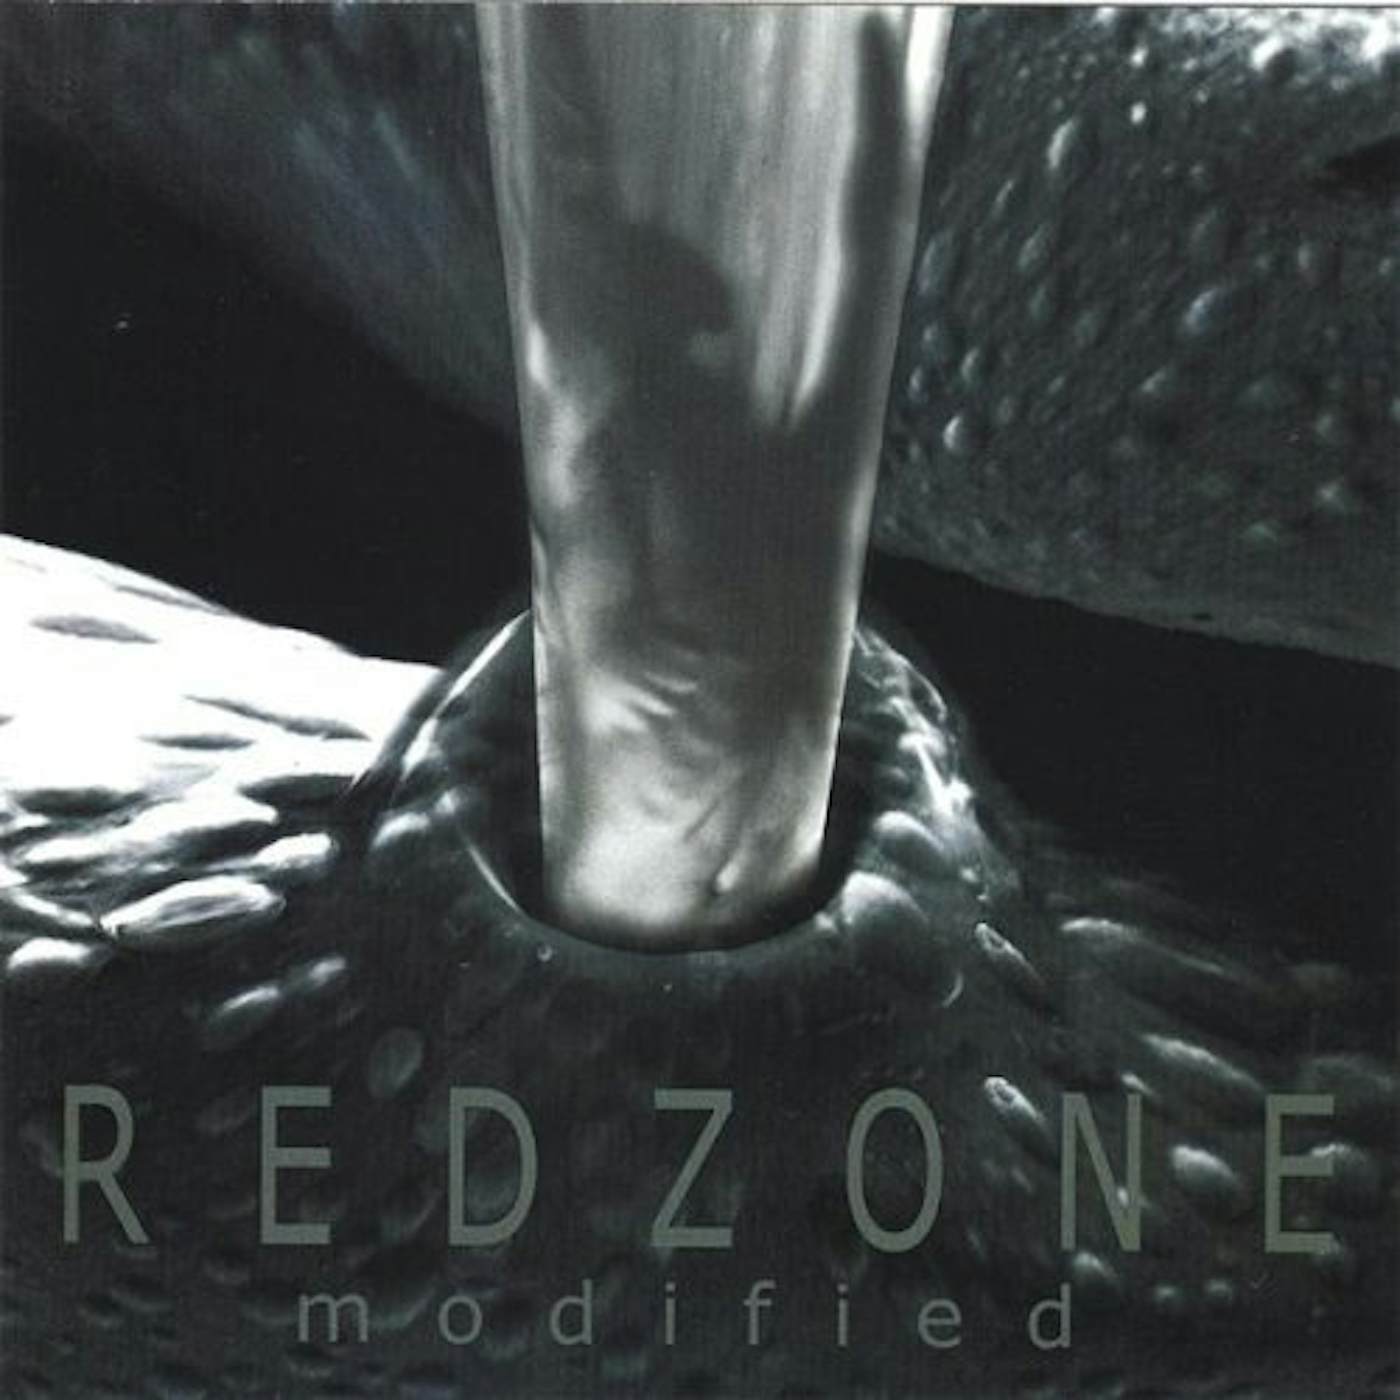 redzone MODIFIED CD